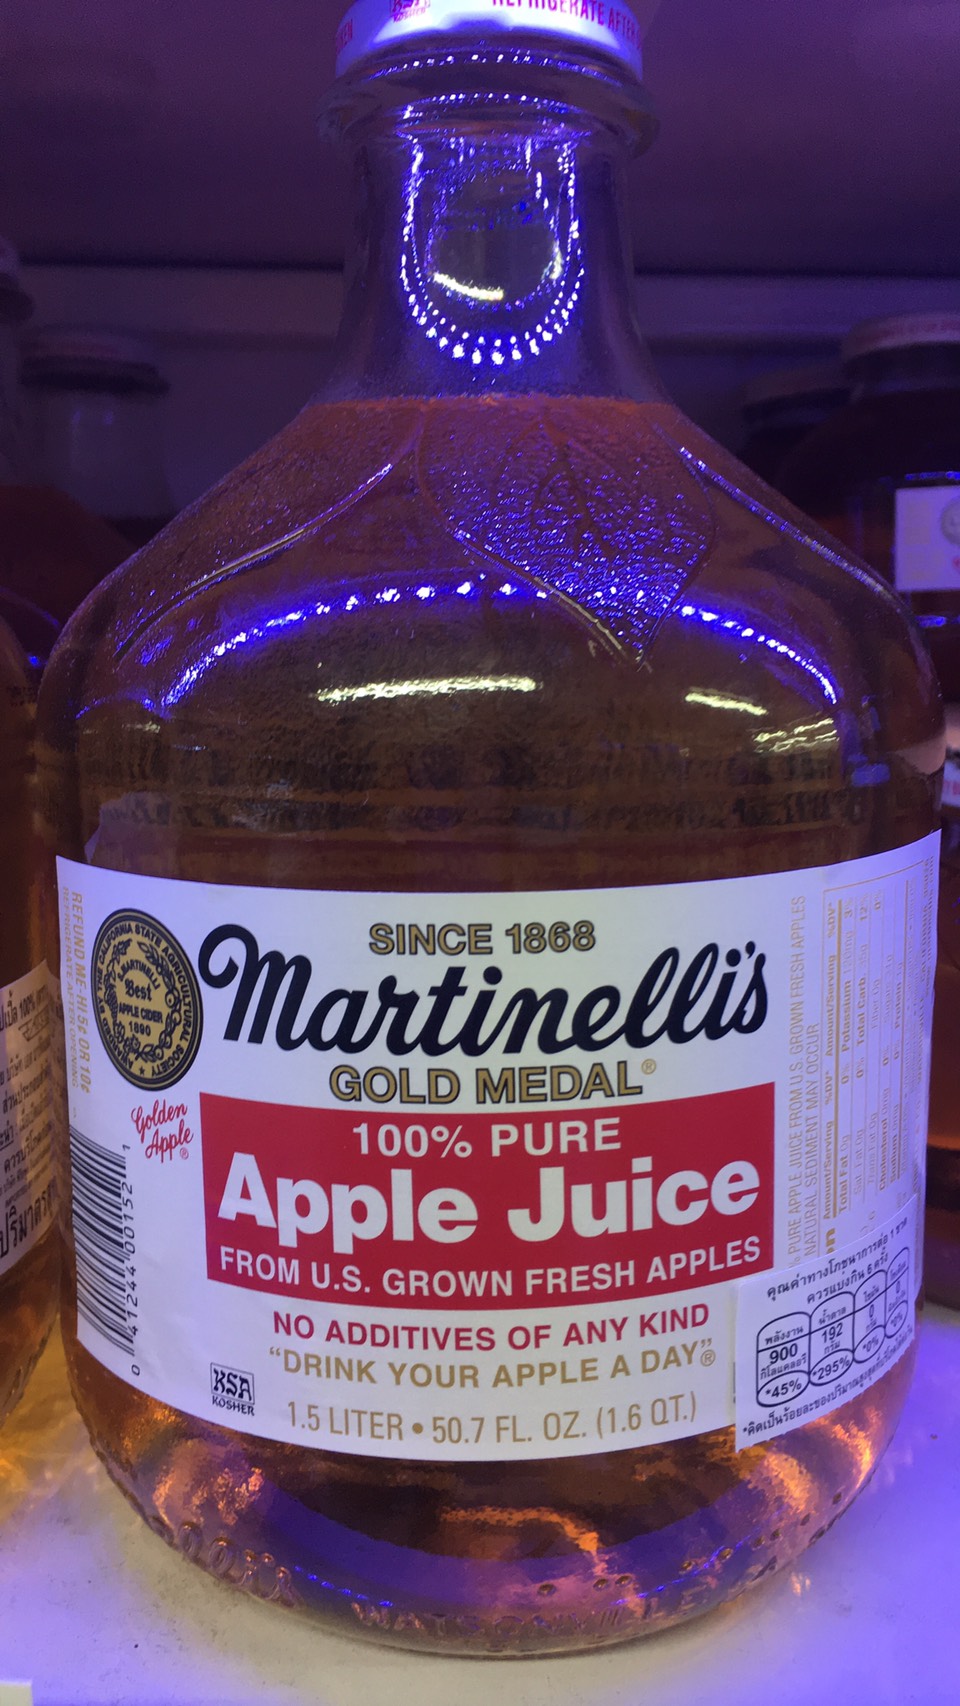 มาร์ตินเนลลี น้ำแอปเปิ้ล 100% (Martinellis Apple Juice 100% Pure) 1.5ml.